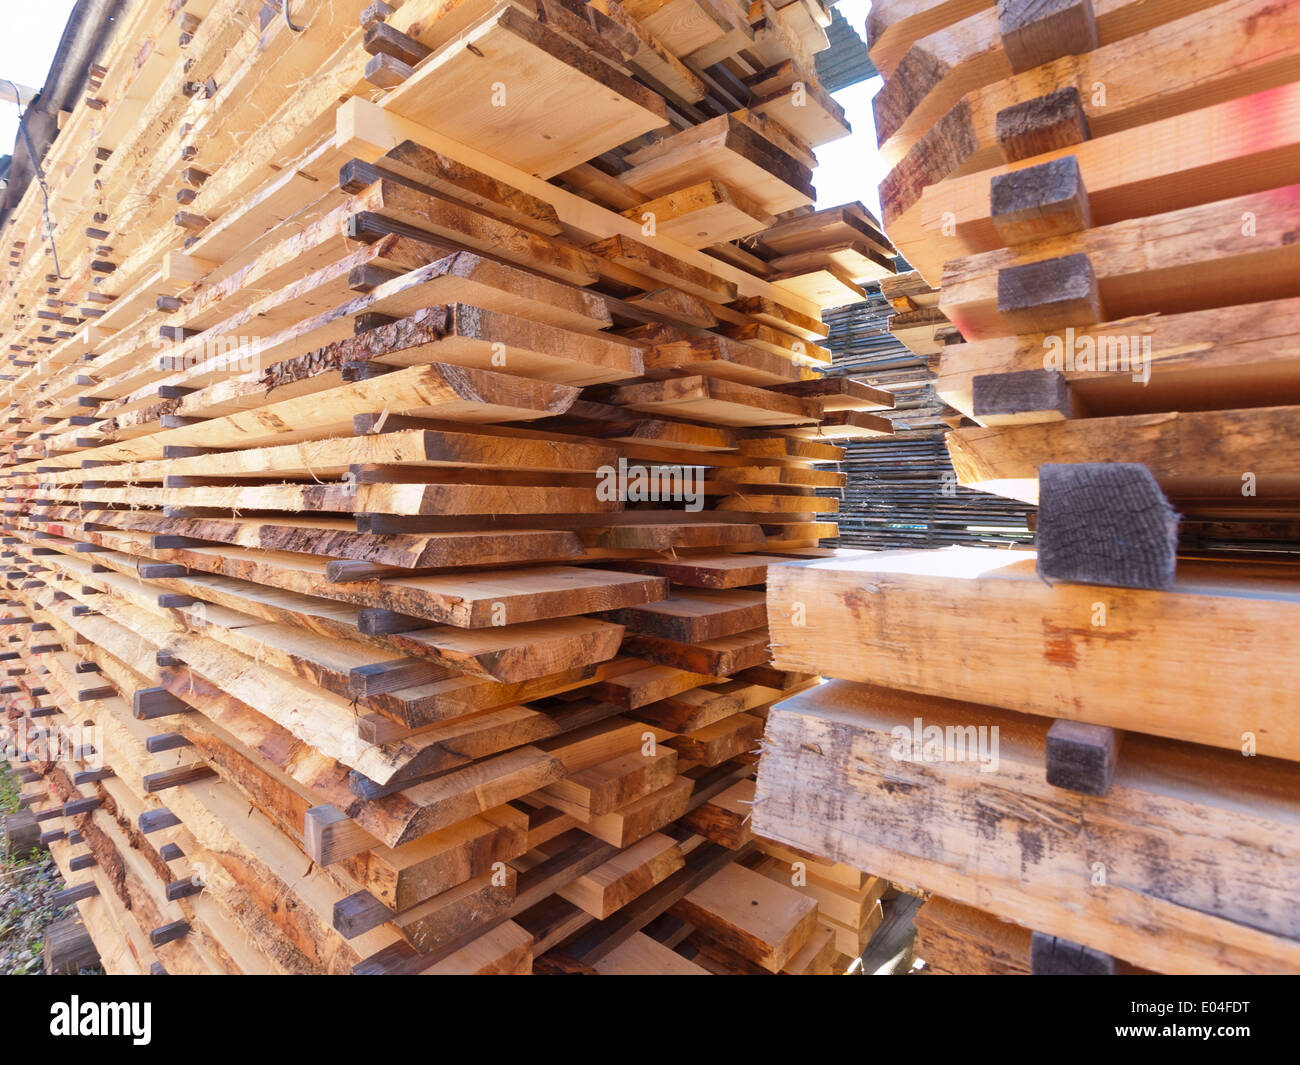 riesige Mengen von Holz / Holz gestapelt zur weiteren Verarbeitung in ein  Holzlager im Emmental, Schweiz Stockfotografie - Alamy